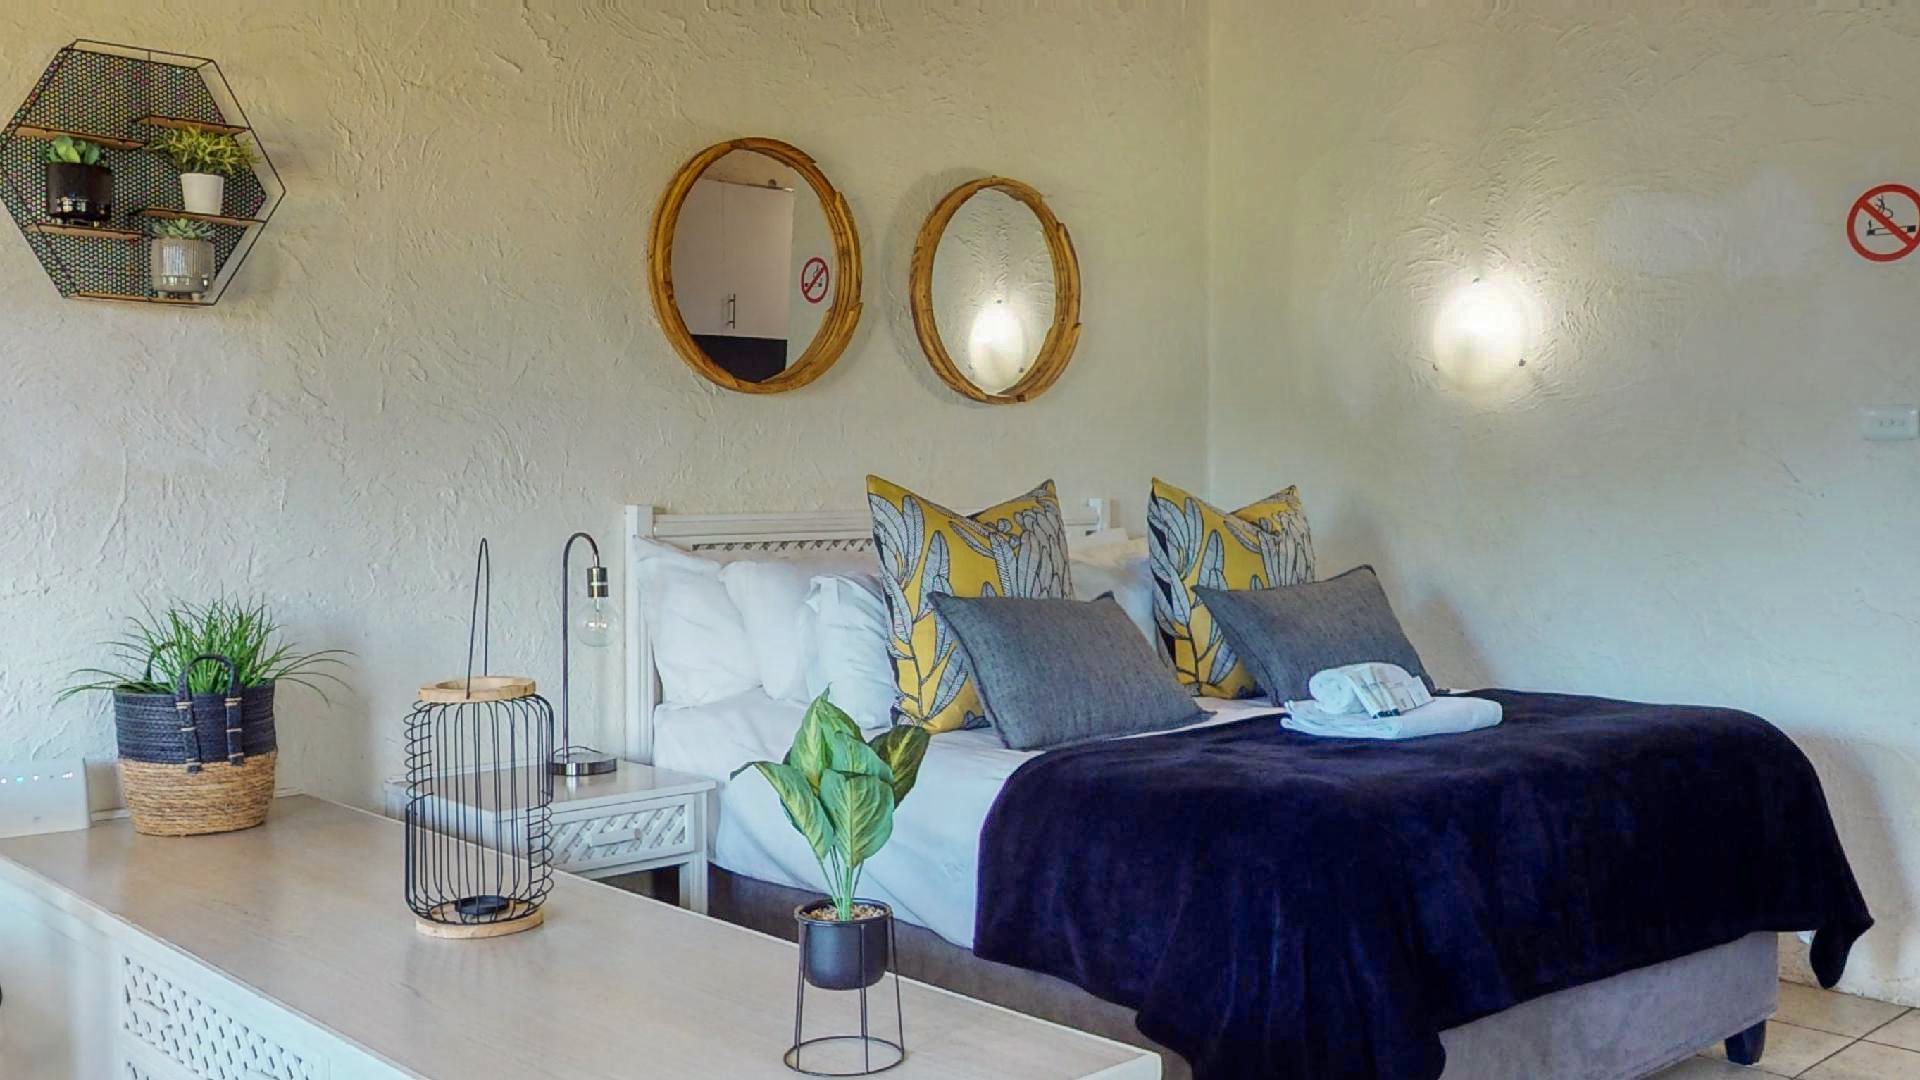  Bedroom Property for Sale in San Lameer KwaZulu-Natal